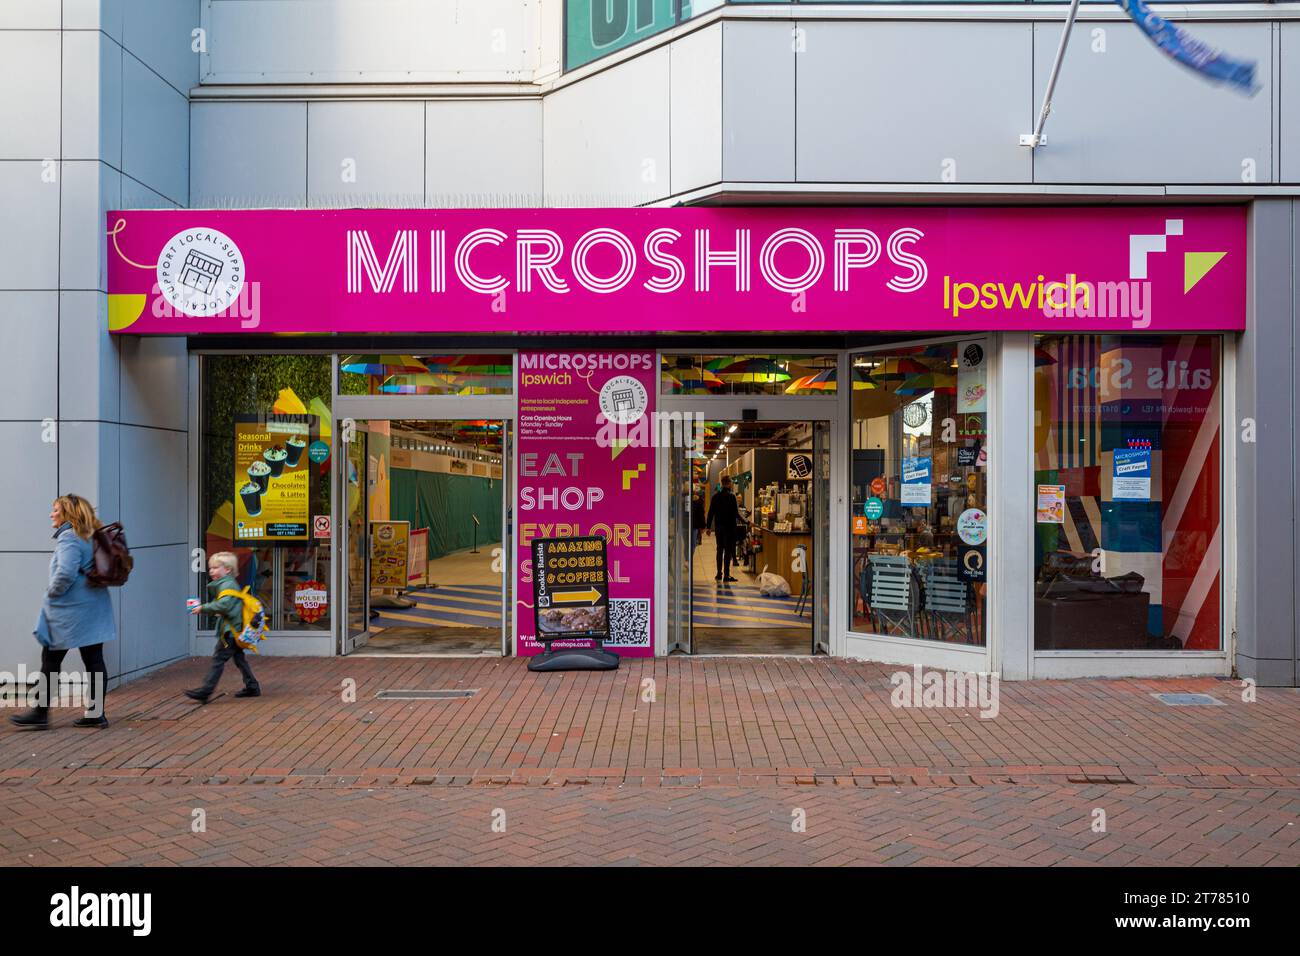 Microshops - Microshops Ipswich bietet eine kostengünstige und risikoarme Möglichkeit, ein Einzelhandelsgeschäft für Unternehmer zu gründen. Ipswich Microshops. Stockfoto